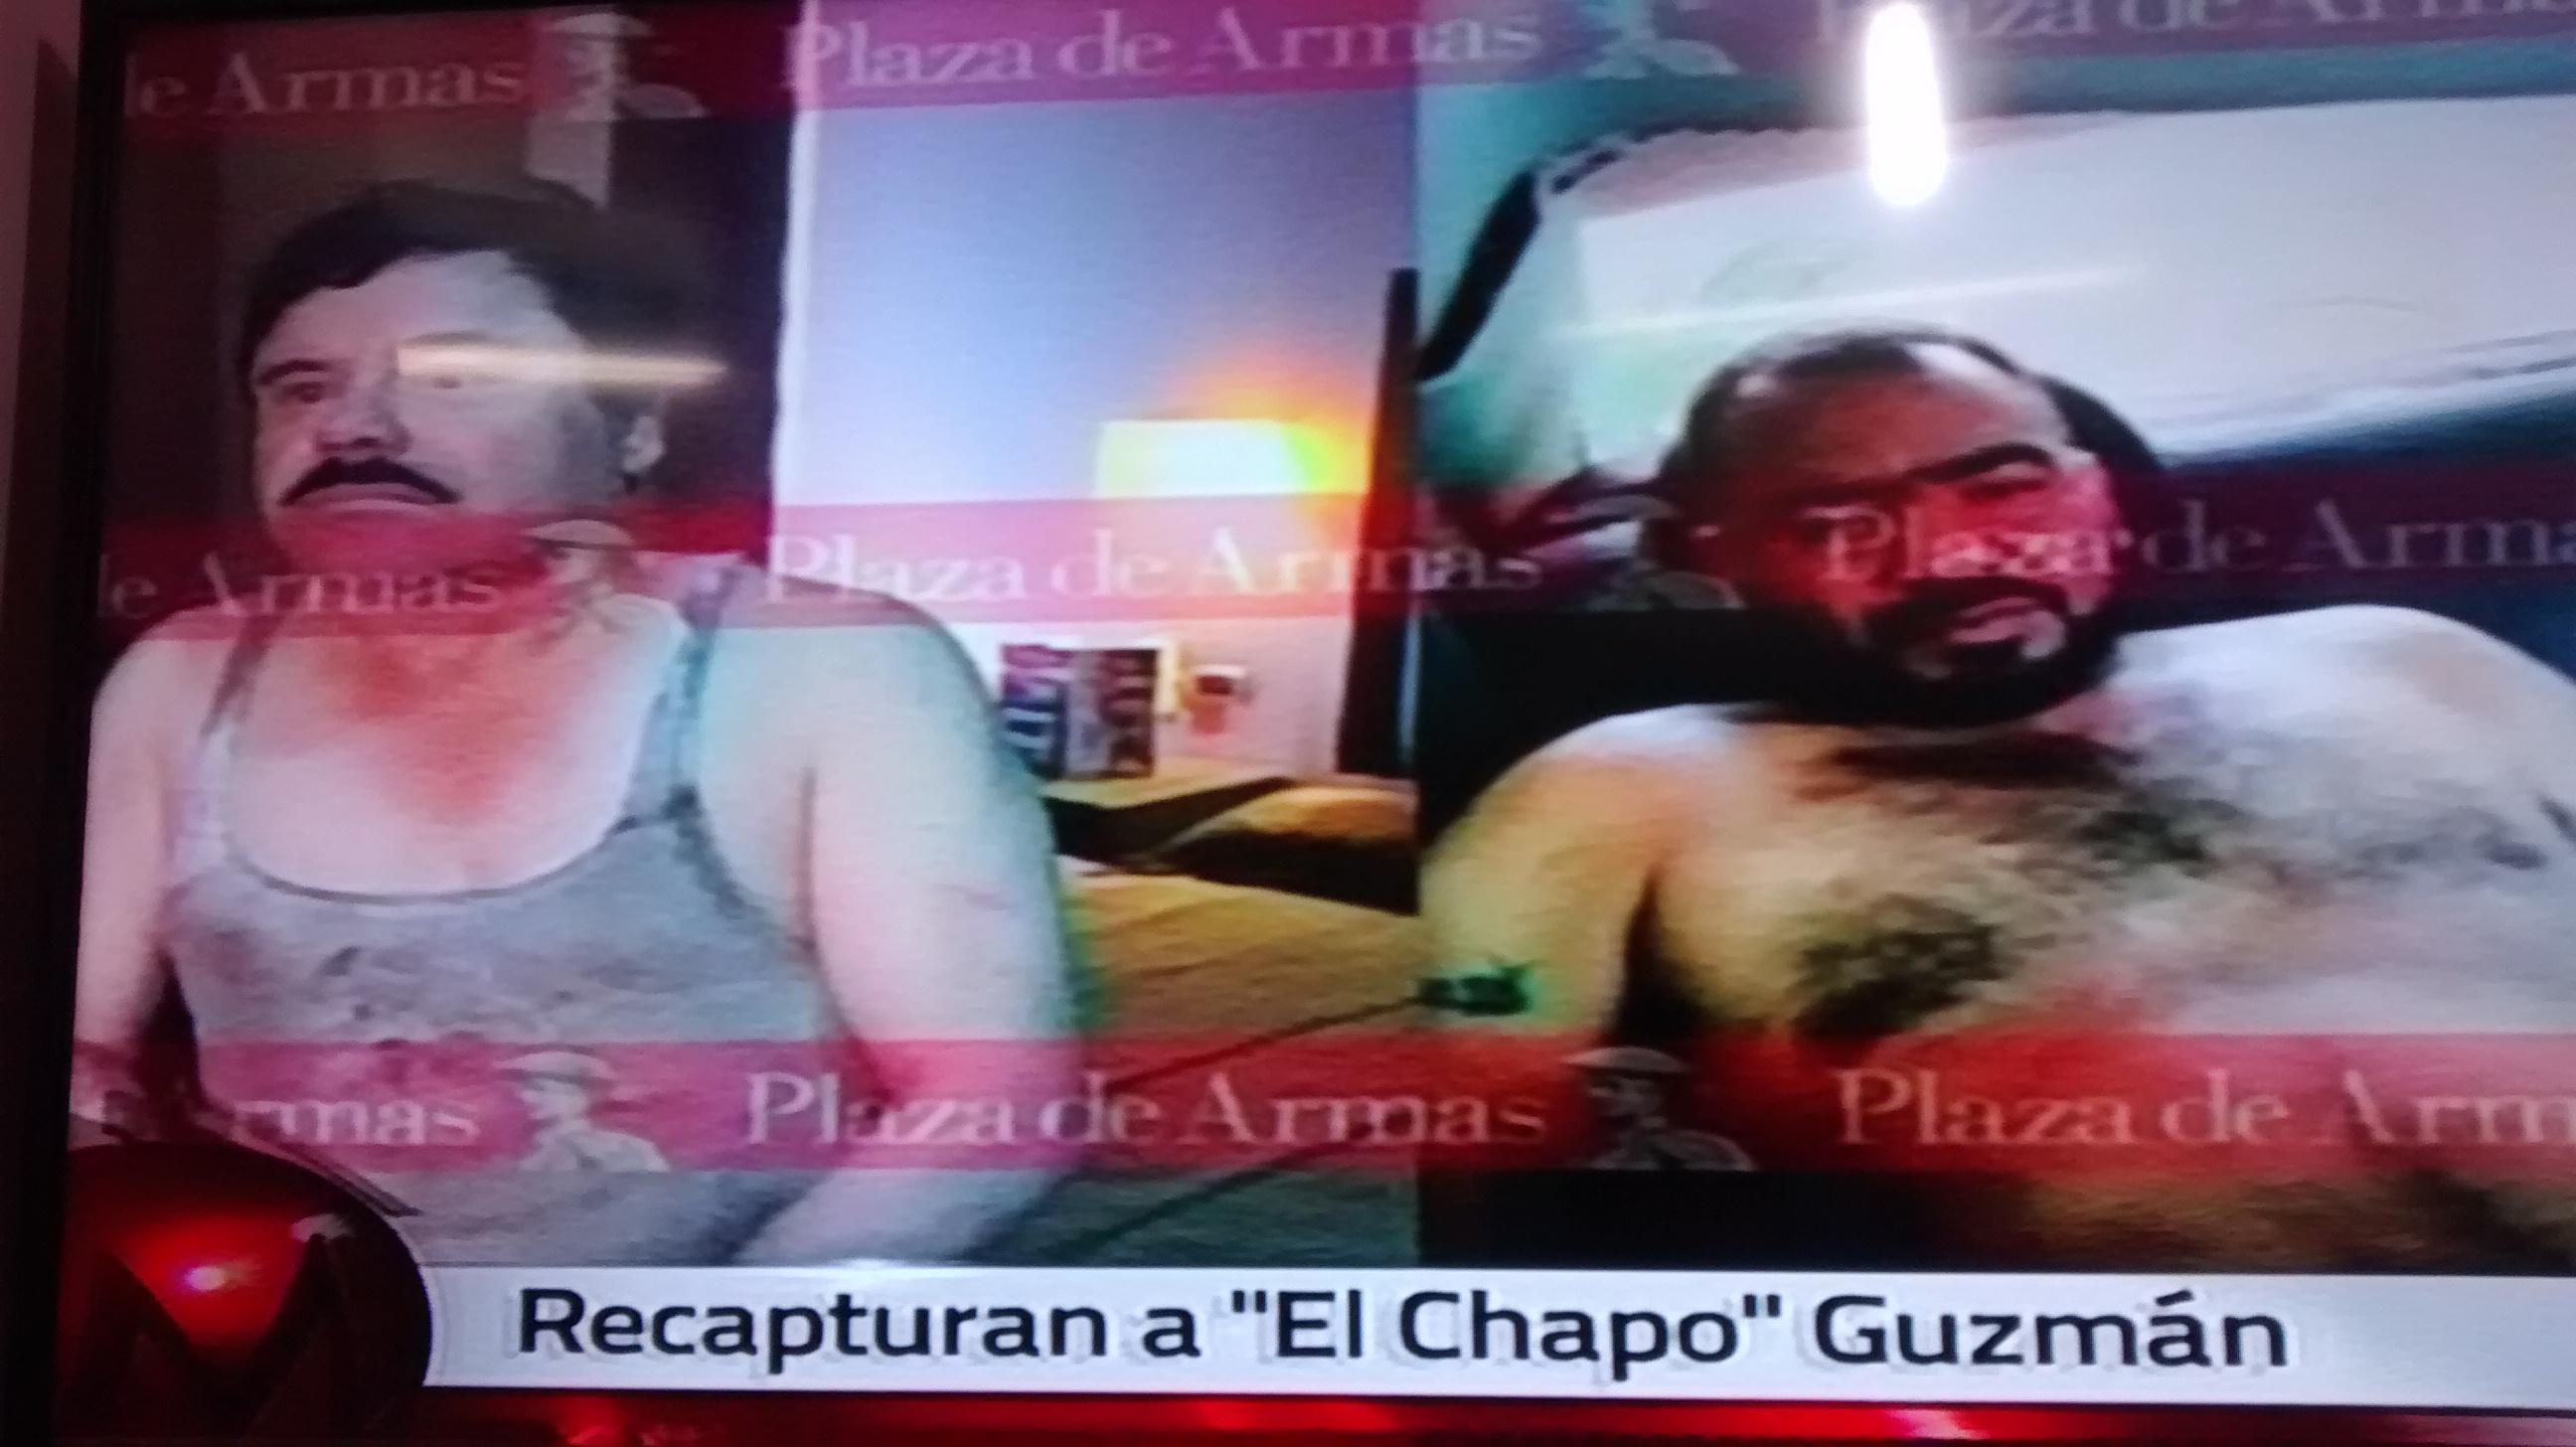 Primeras fotografías del “Chapo” después de su recaptura